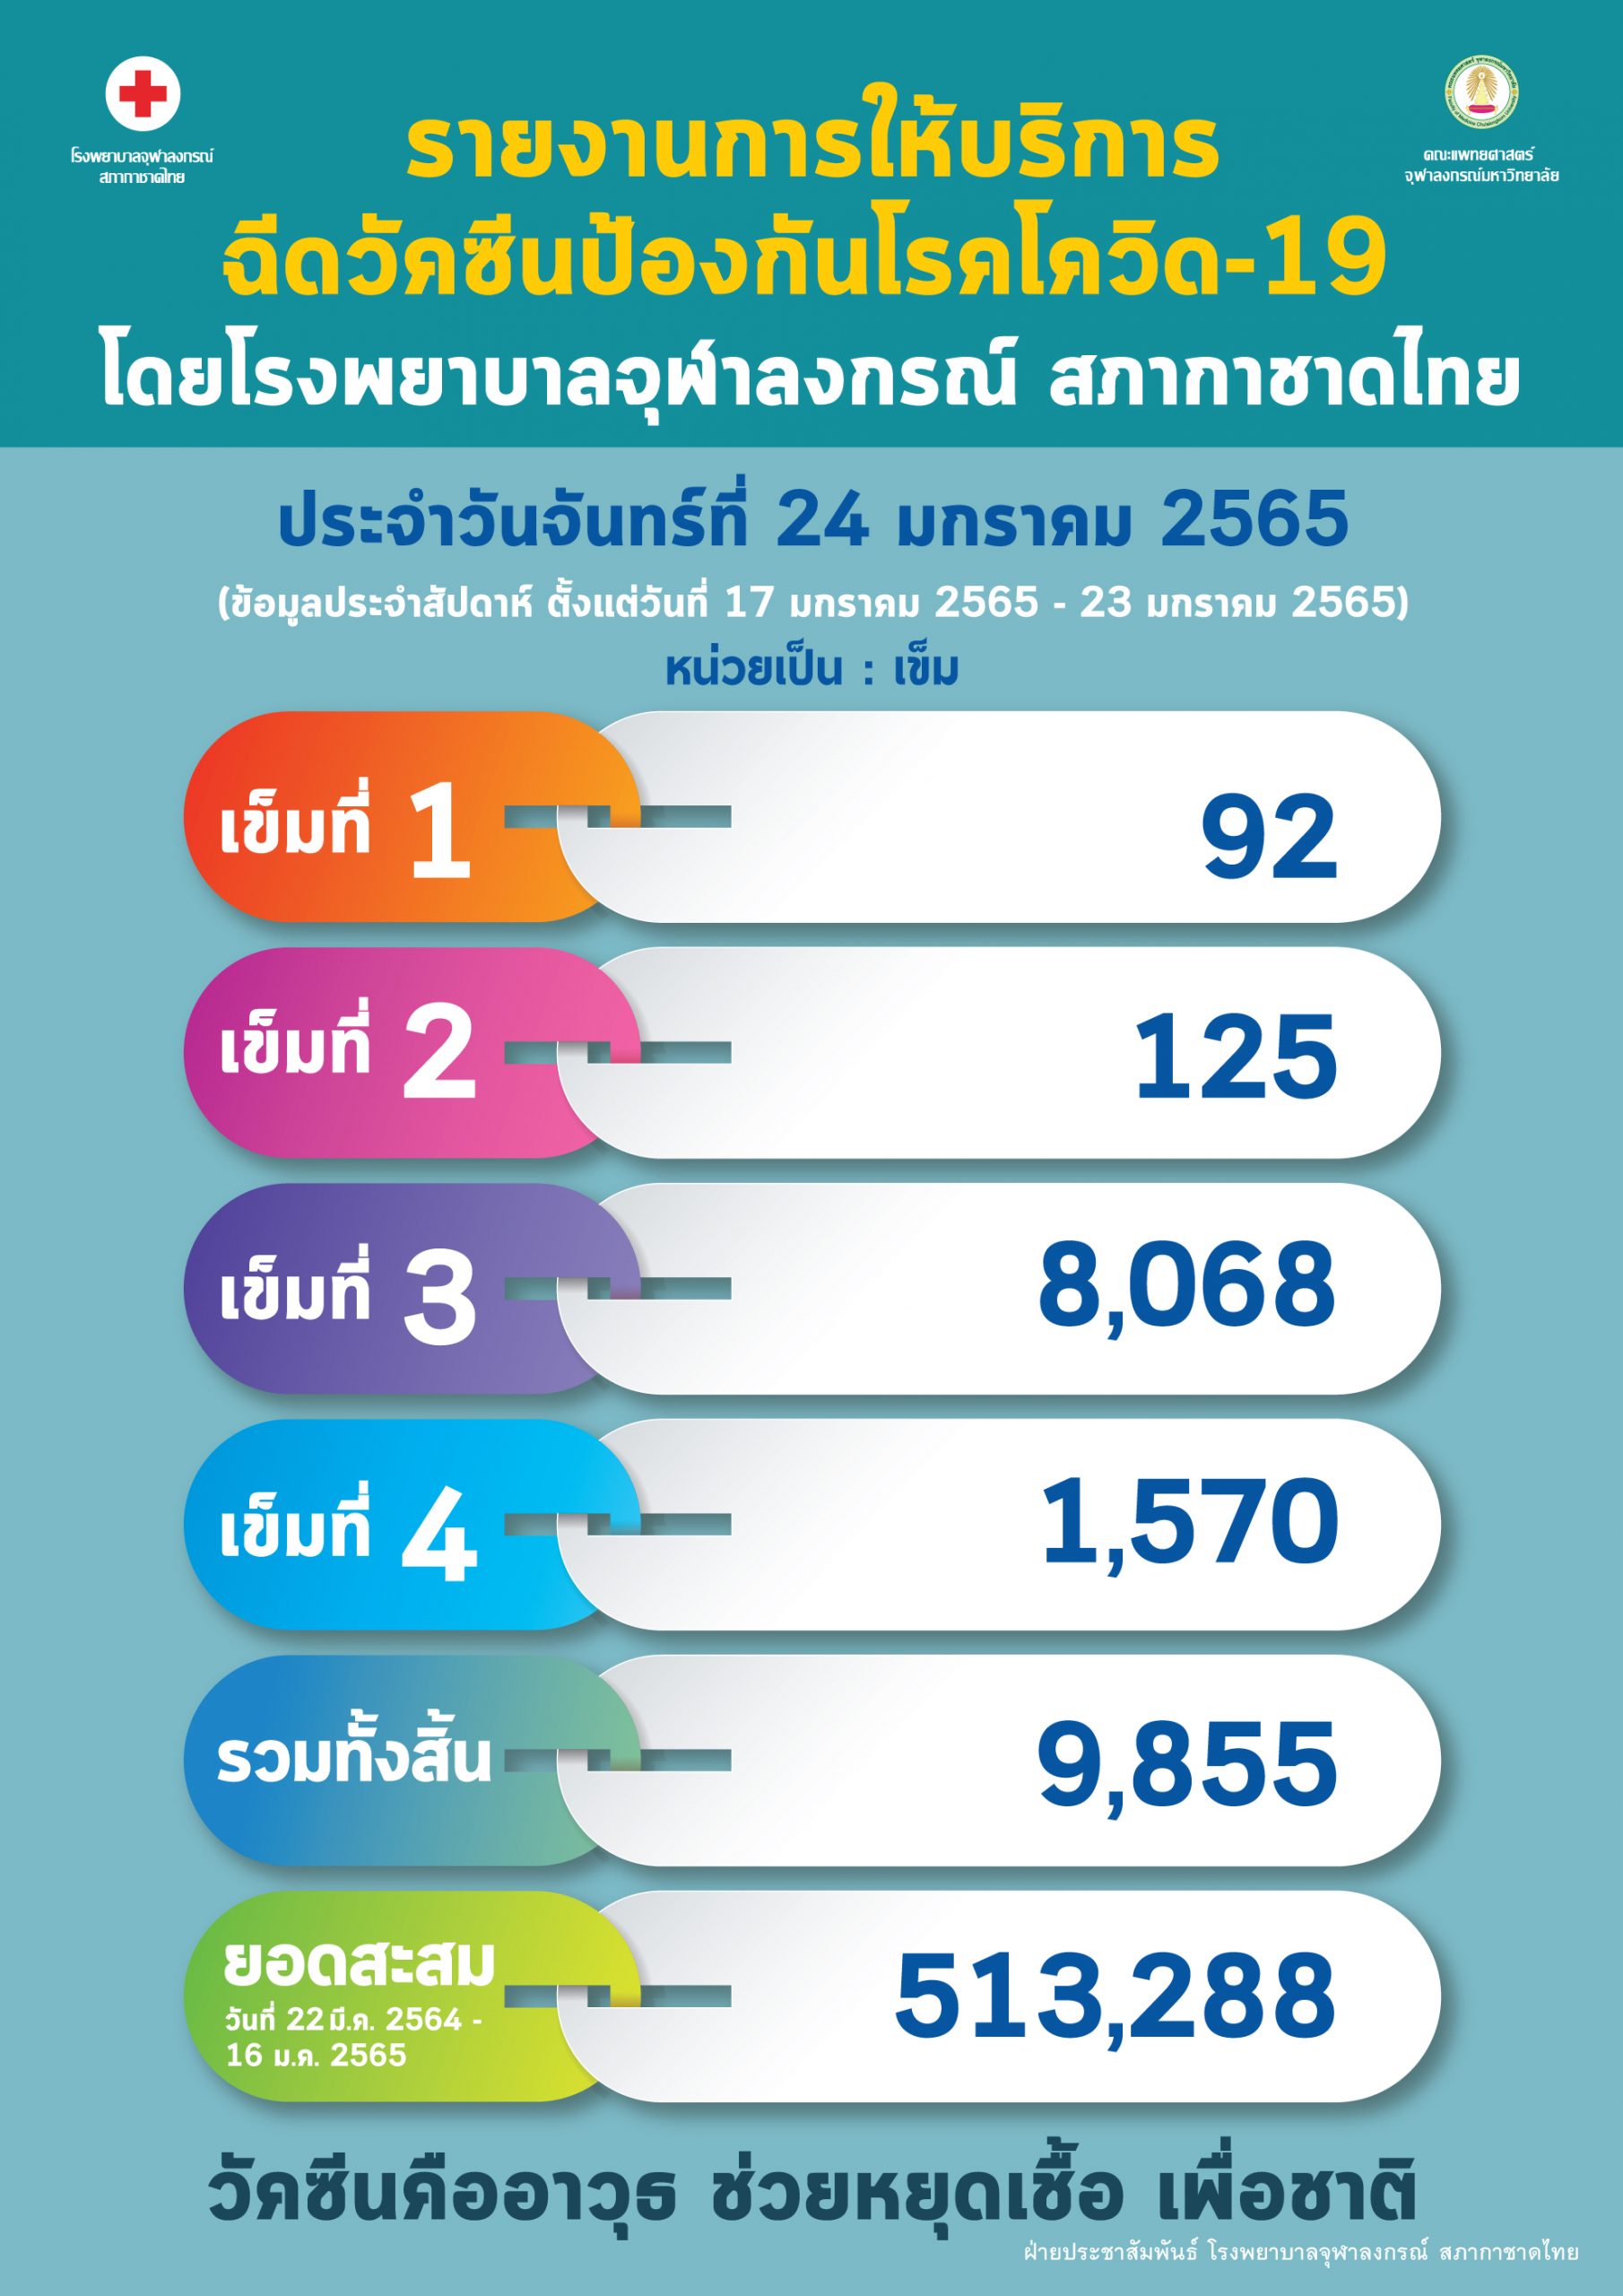 รายงานการให้บริการฉีดวัคซีนป้องกันโรคโควิด-19 โดยโรงพยาบาลจุฬาลงกรณ์ สภากาชาดไทย ประจำวันจันทร์ที่ 24 มกราคม 2565